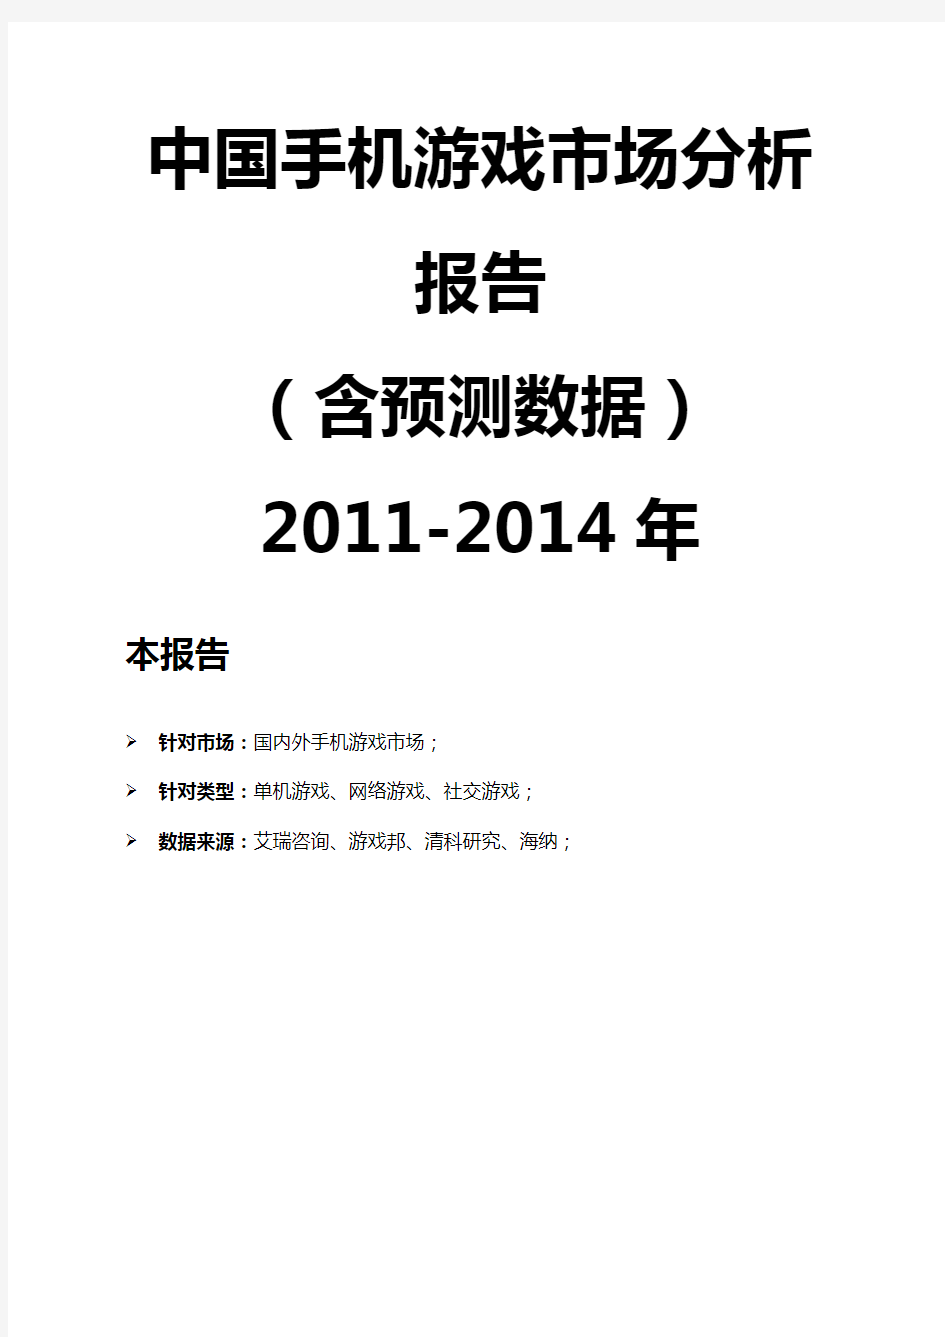 20-204年中国手机游戏市场分析报告(doc 40页)